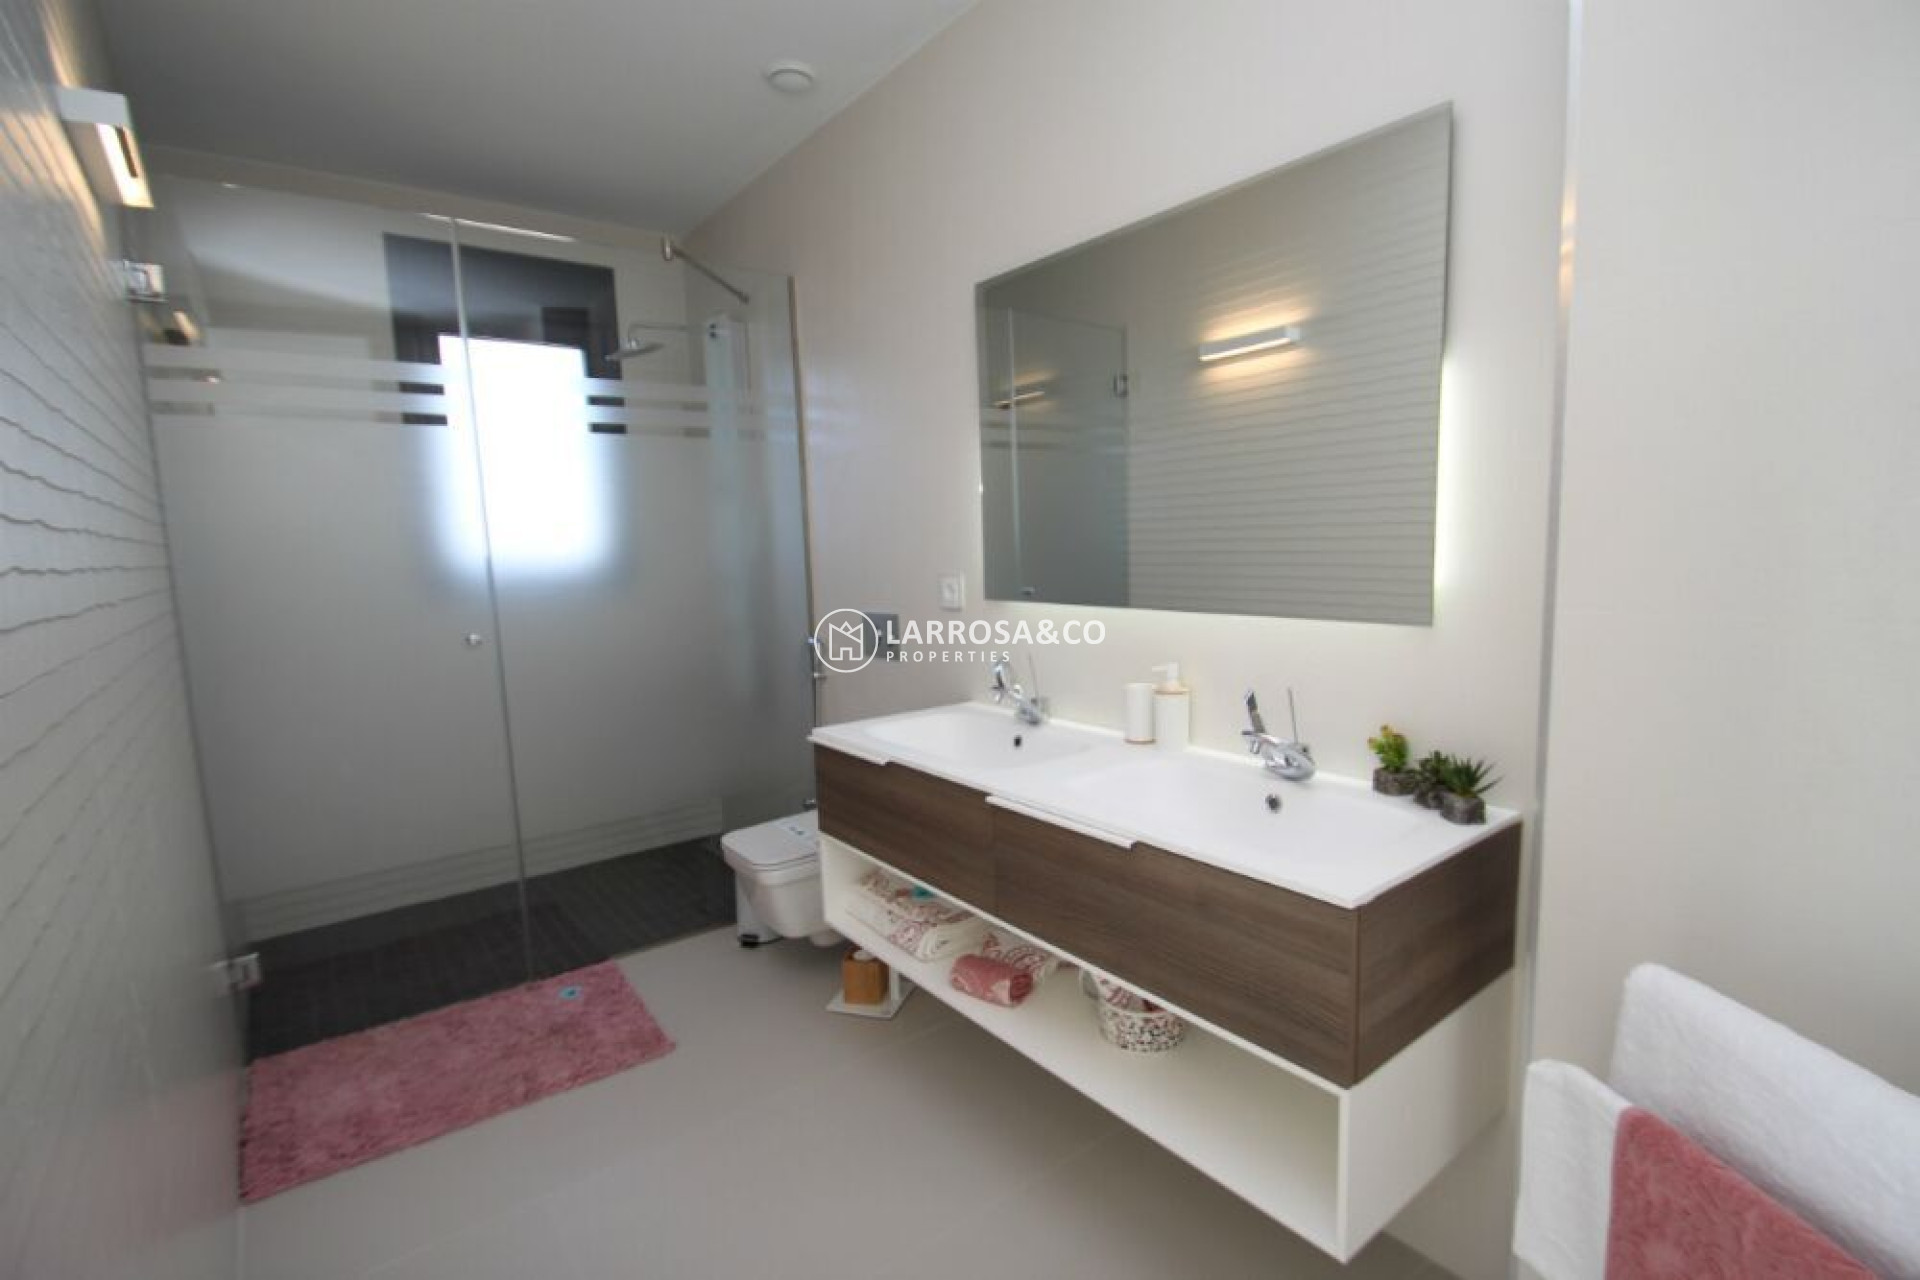 new-build-villa-sanmiguel-bathroom2-on2119